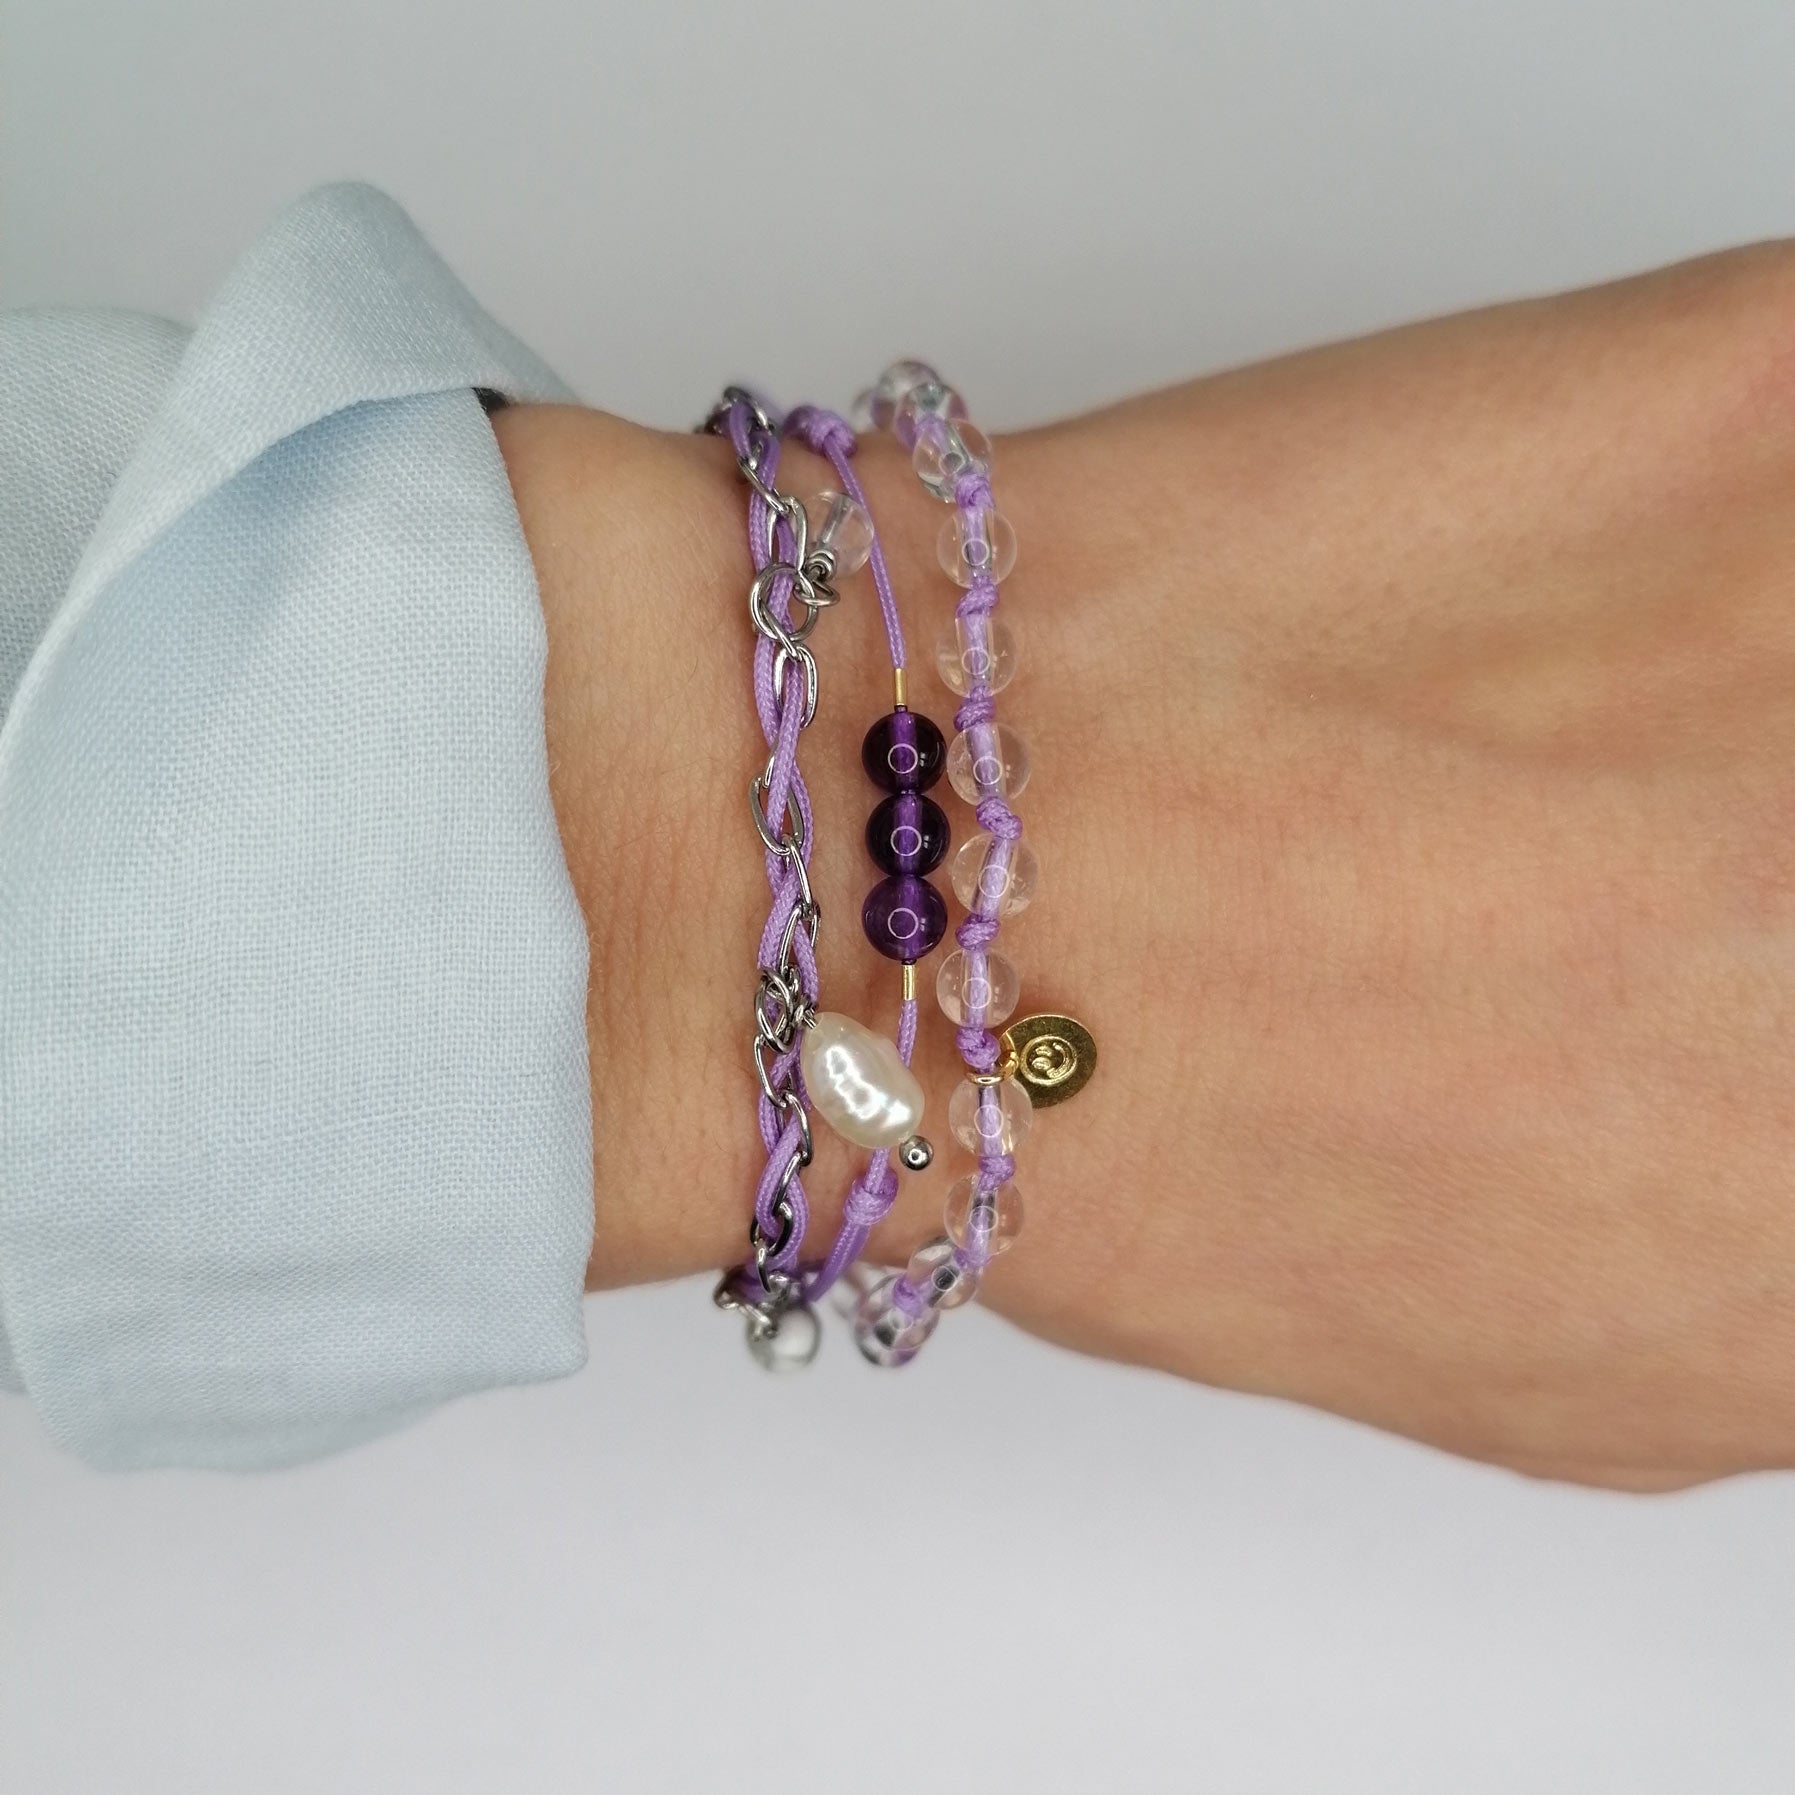 Set drei Edelstein Armbänder in lila bei pia norden